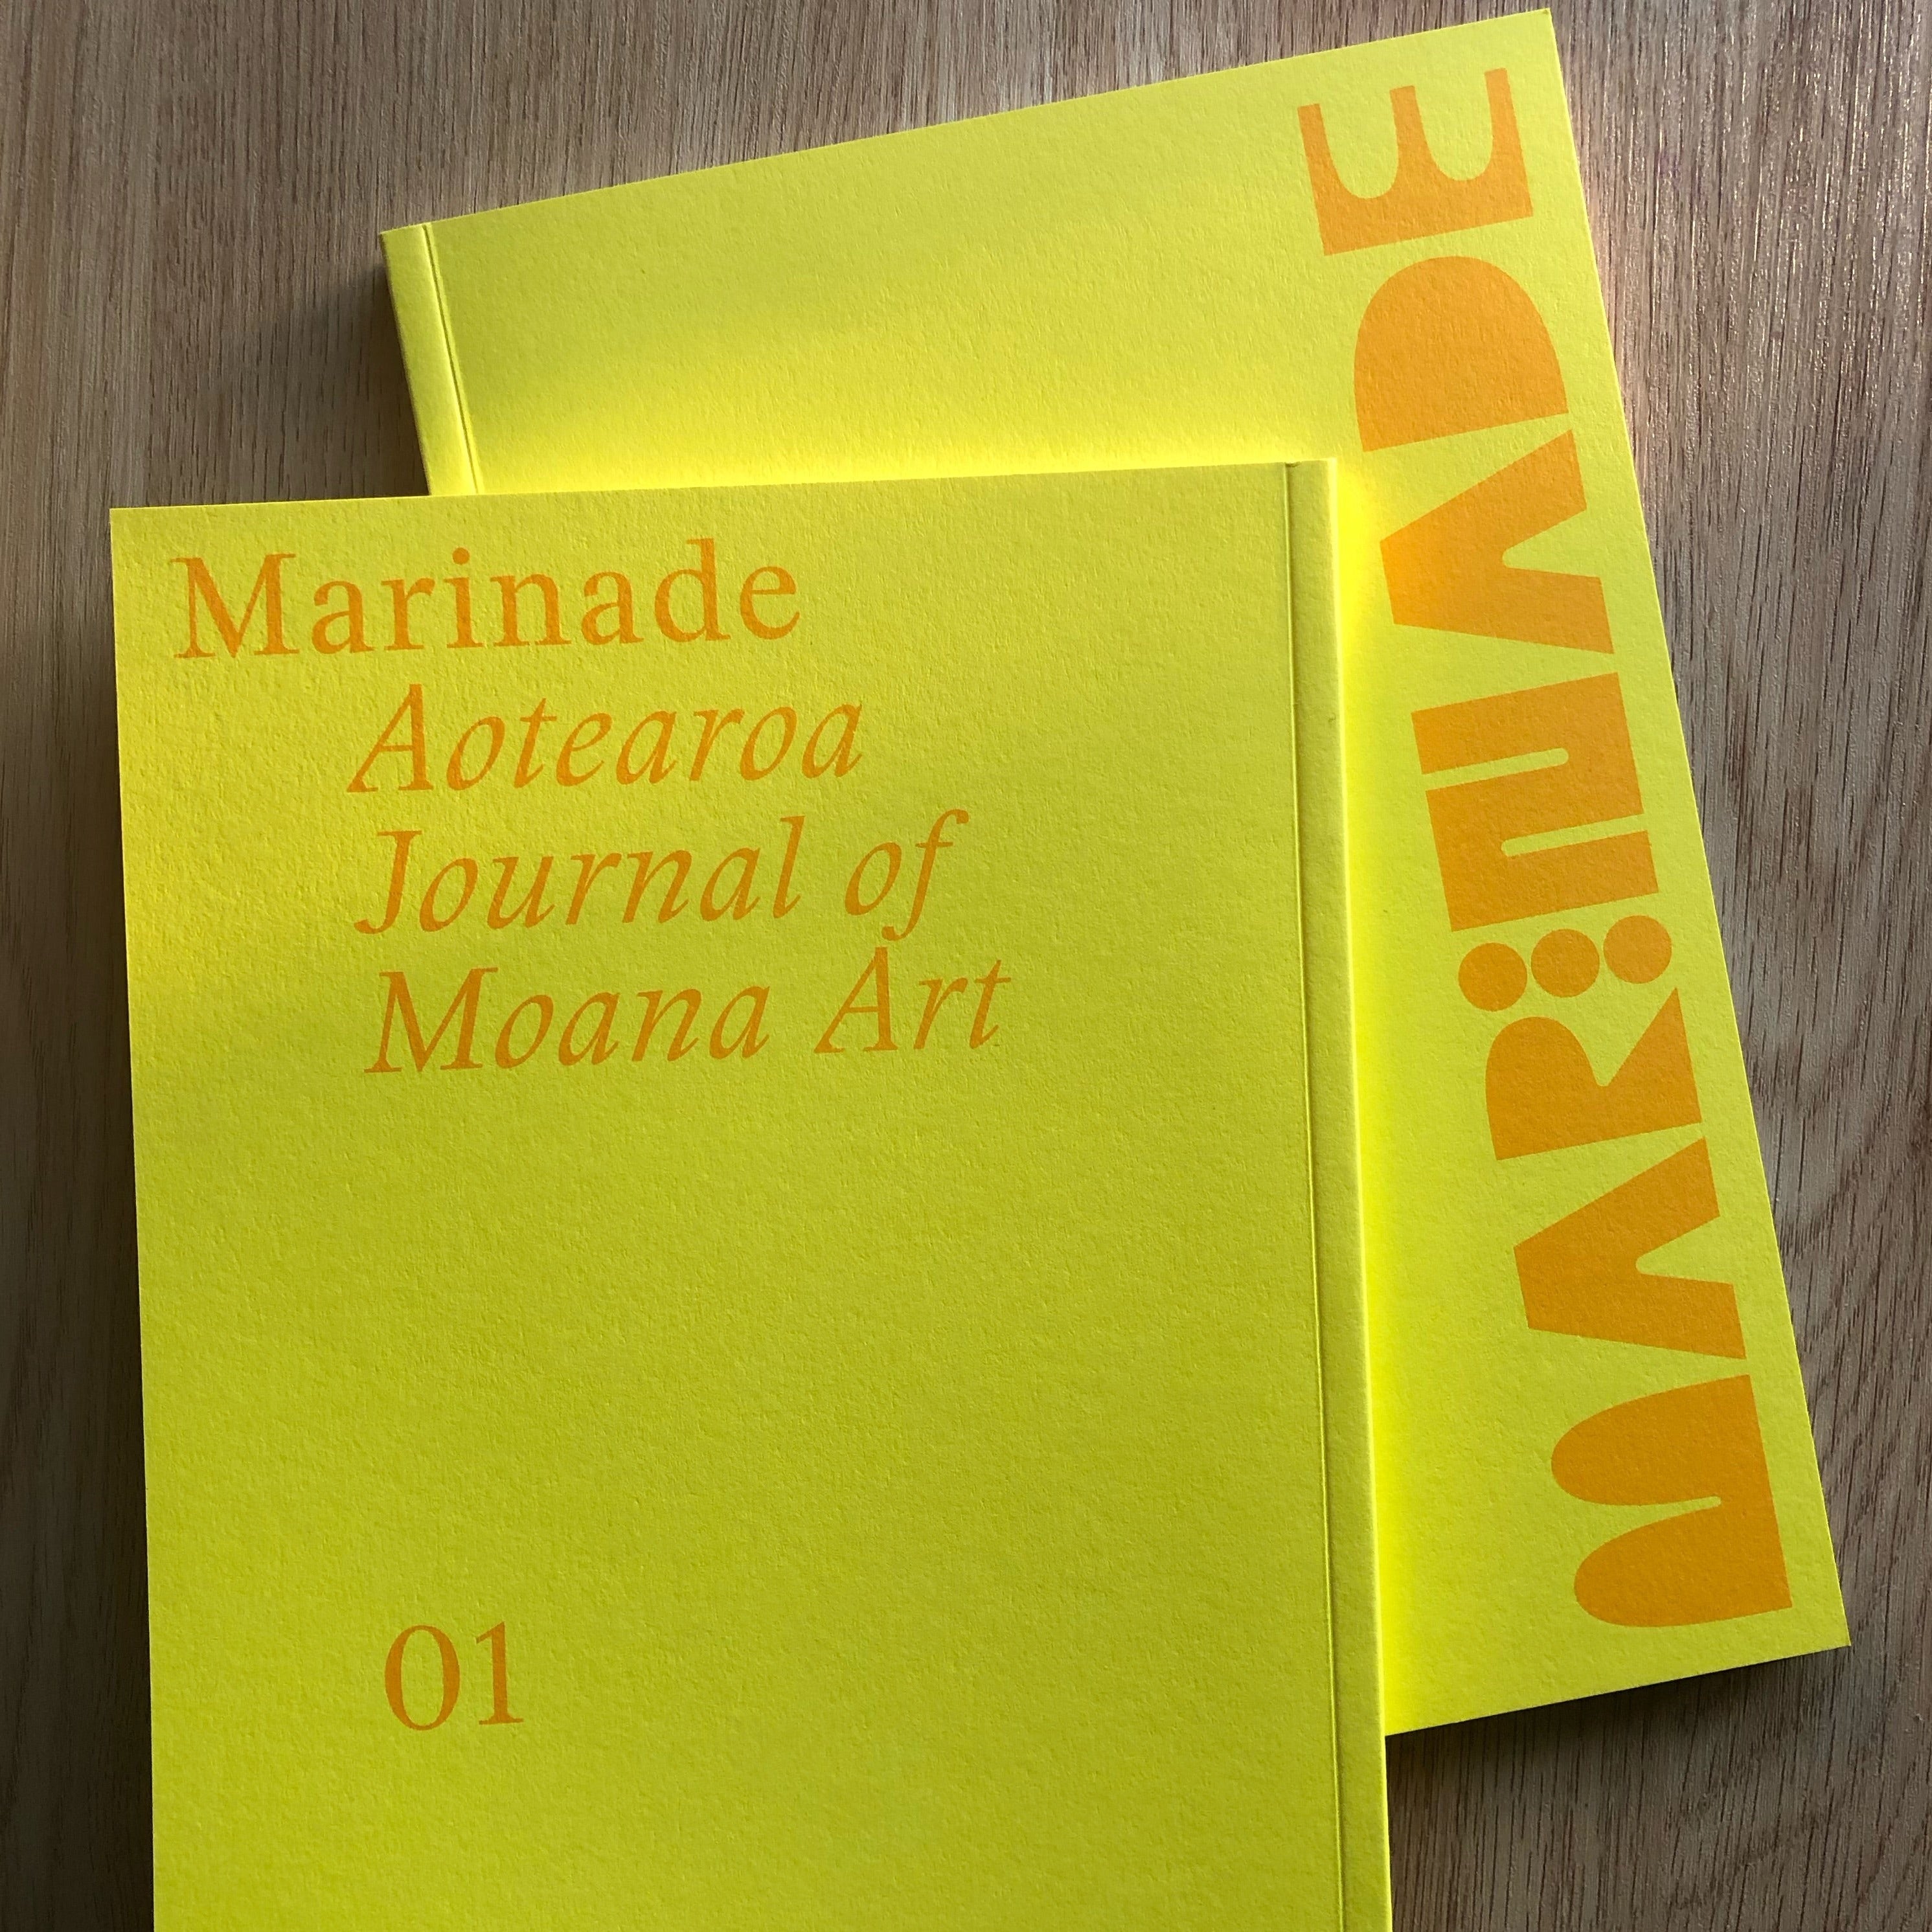 Marinade: Aotearoa Journal of Moana Art Issue 01